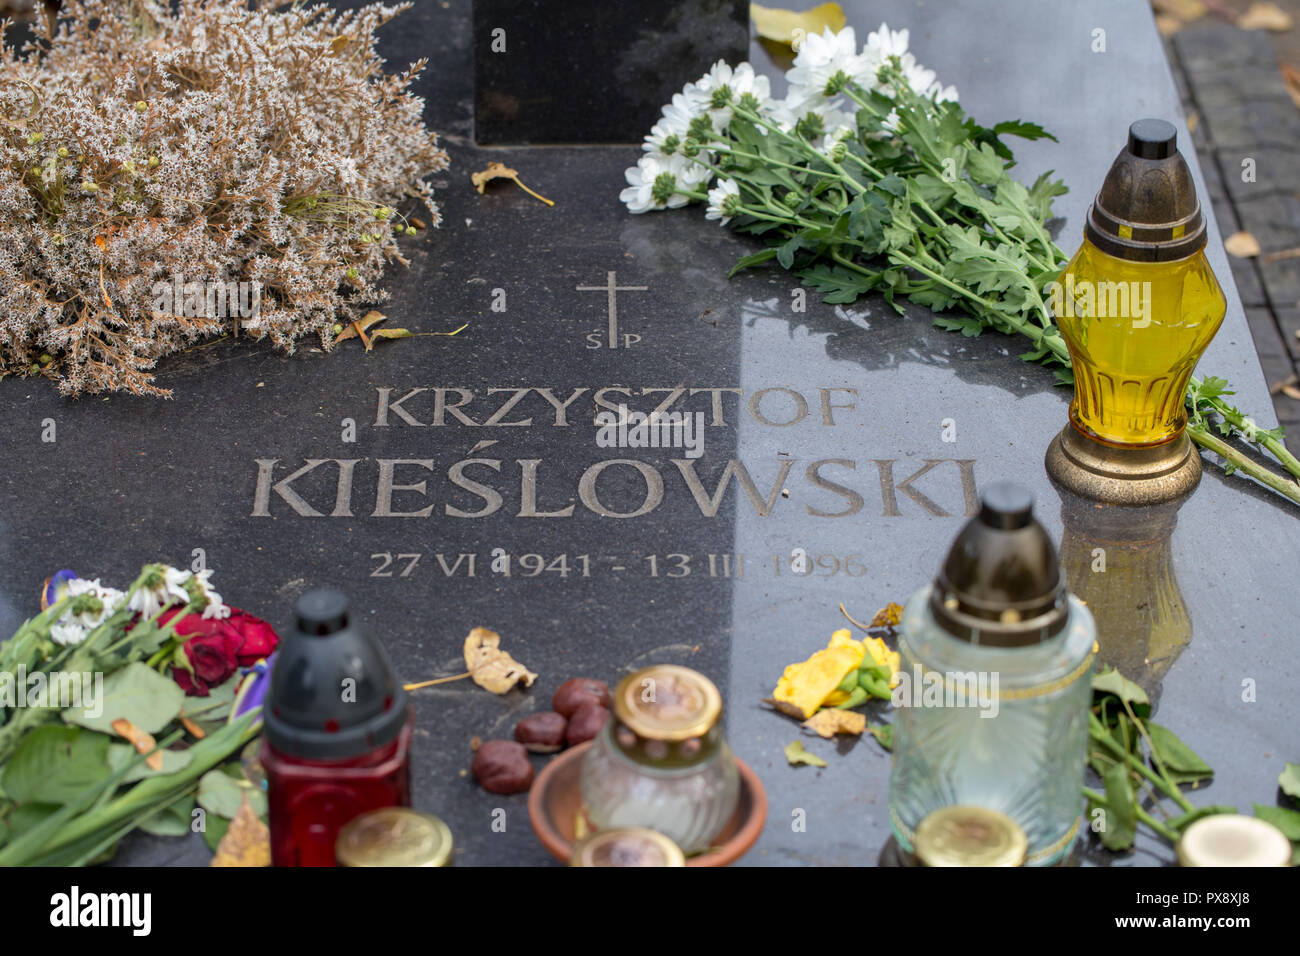 Powazki Cemetery, Warsaw. Grave of Polish famous film director Krzysztof Kieslowski Stock Photo